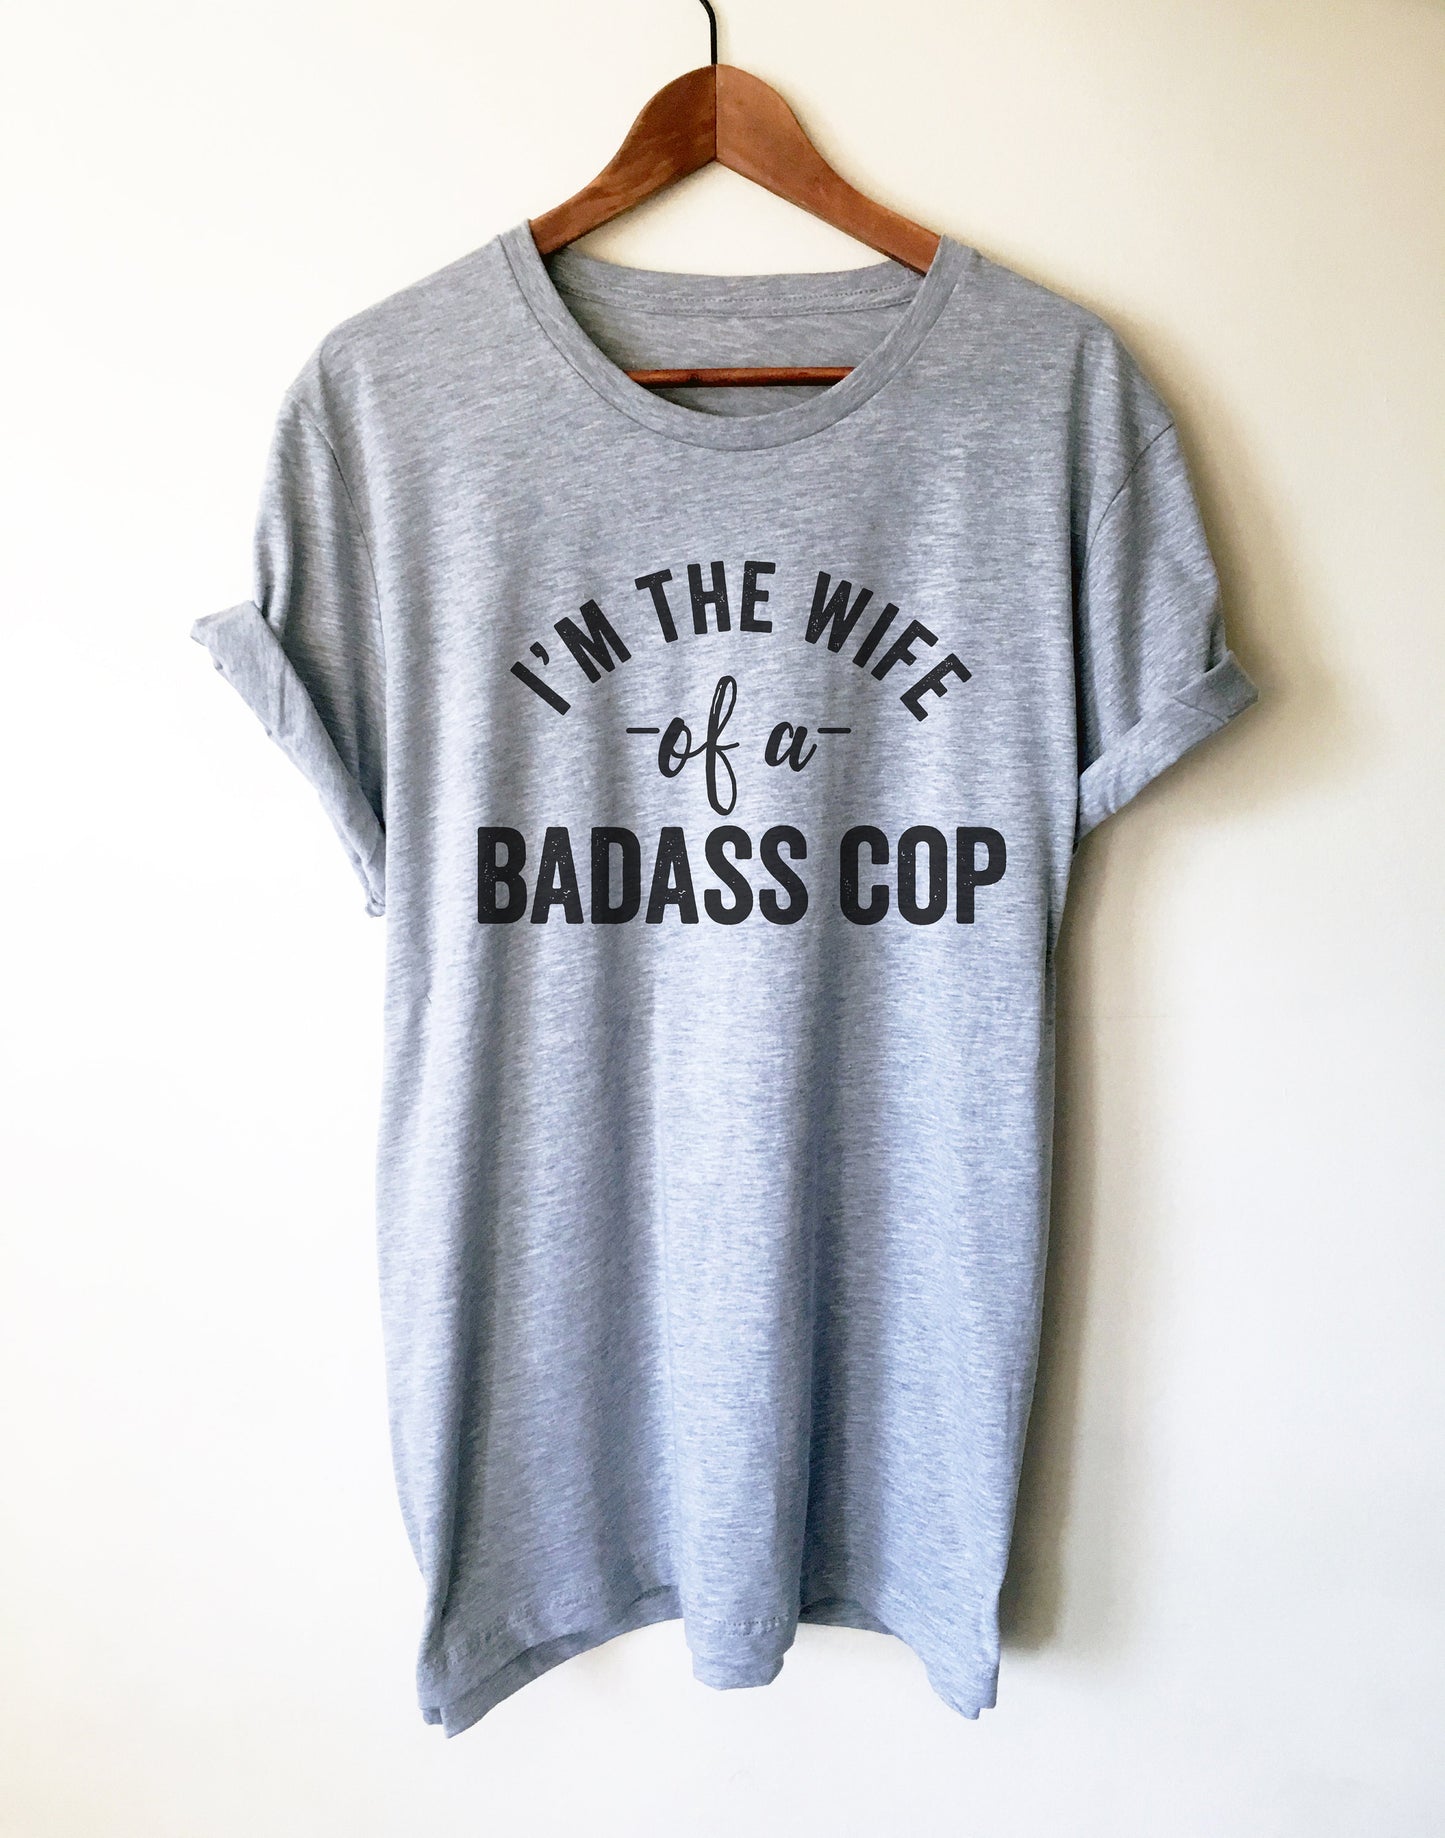 I'm The Wife Of A Badass Cop Unisex Shirt - Police Wife Shirt, Police Wife, Police Officer Gifts, Police Girlfriend, Law Enforcement